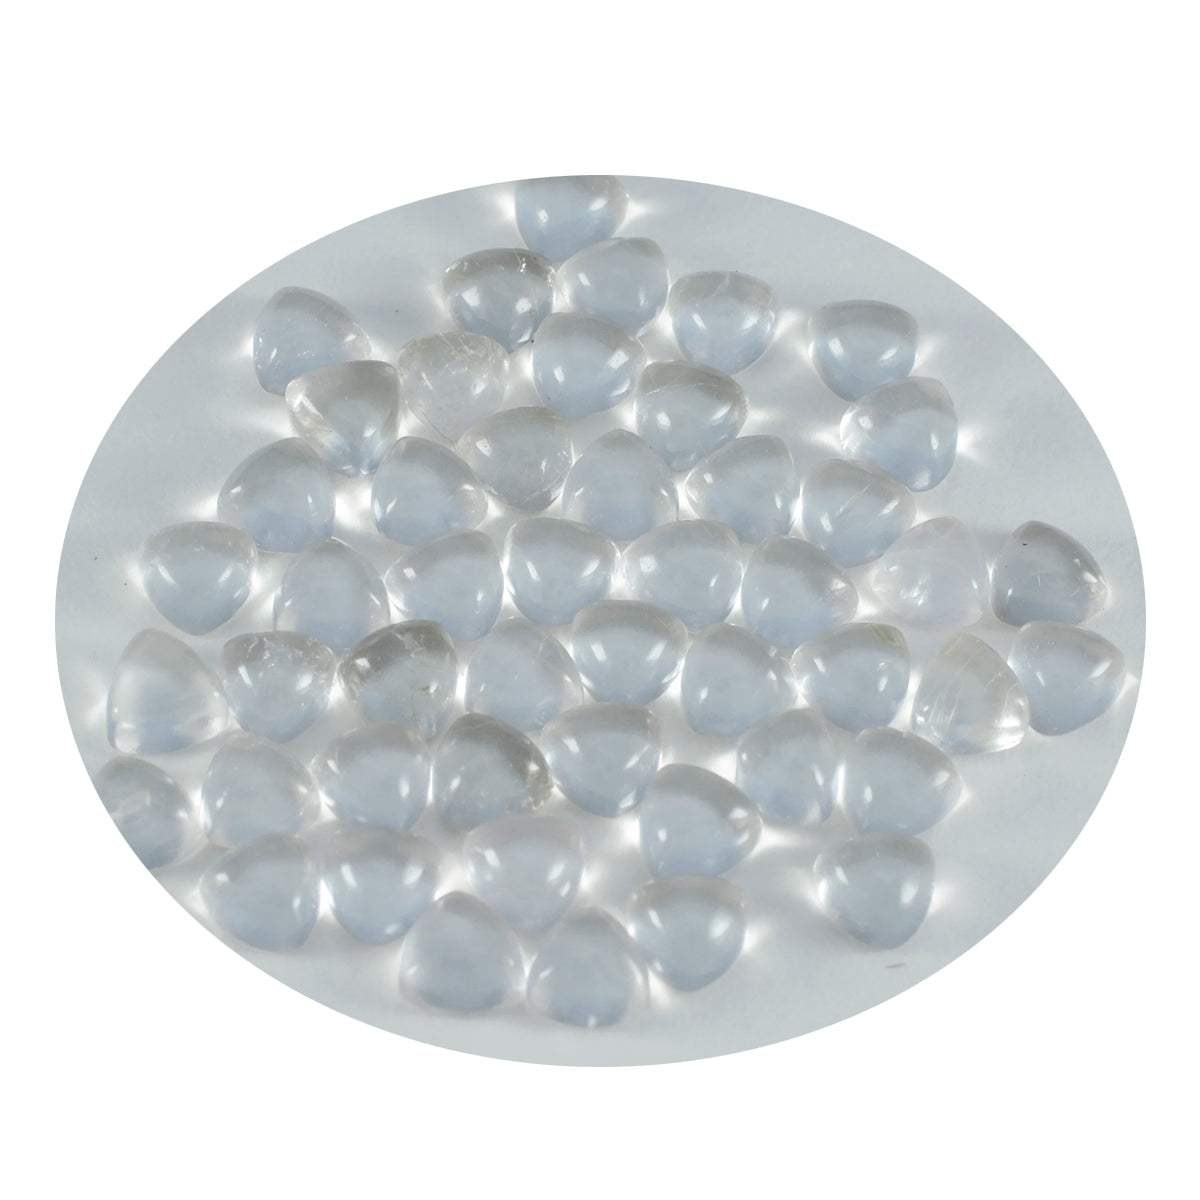 Riyogems, 1 pieza, cabujón de cuarzo de cristal blanco, 7x7mm, forma de billón, gemas de calidad sorprendentes